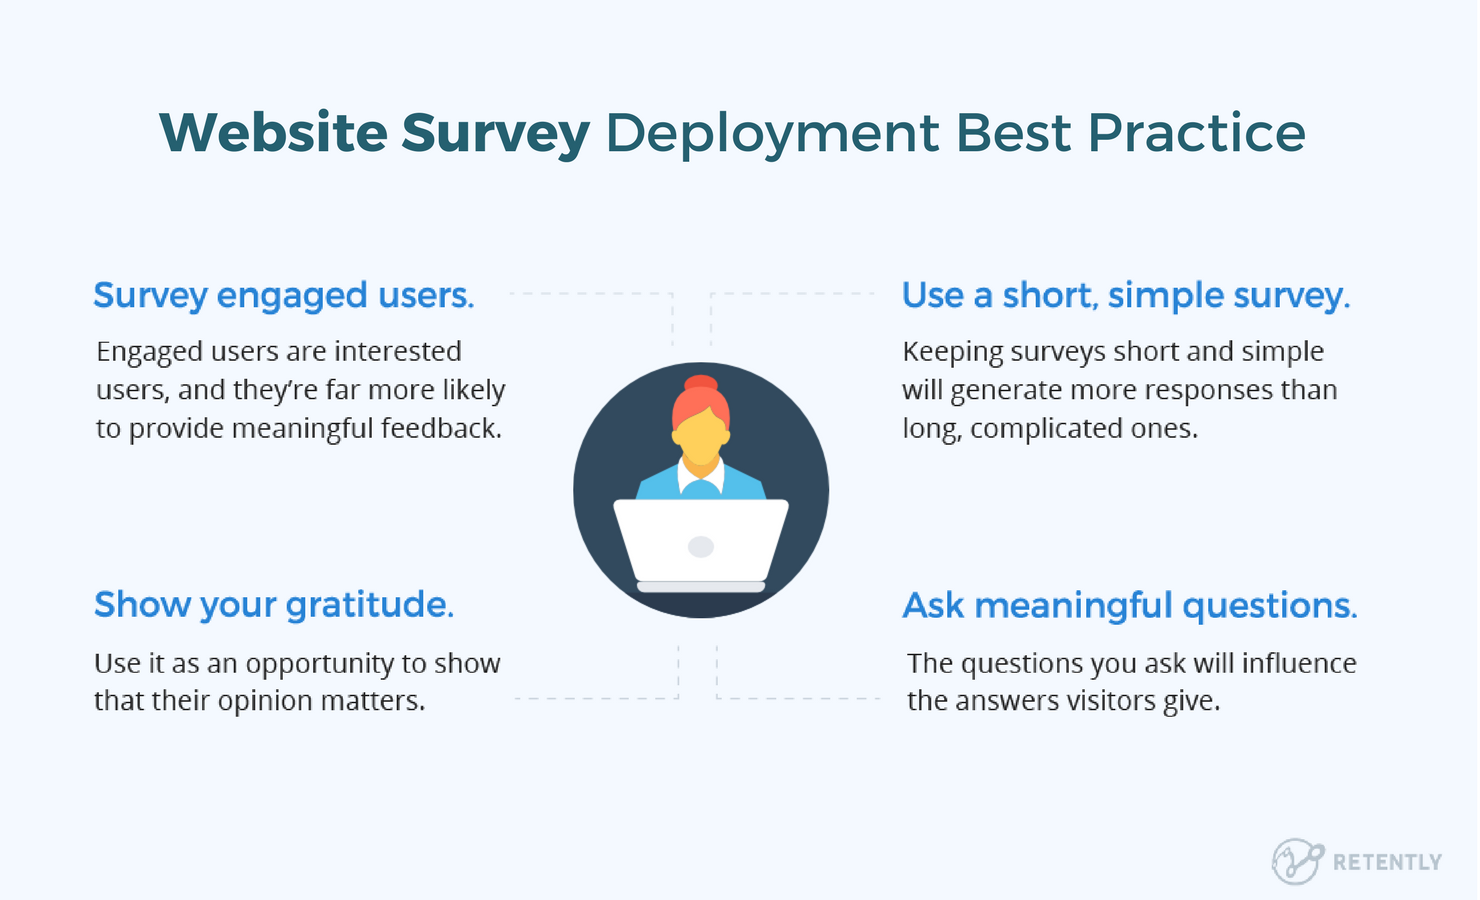 Website survey deployment best practice